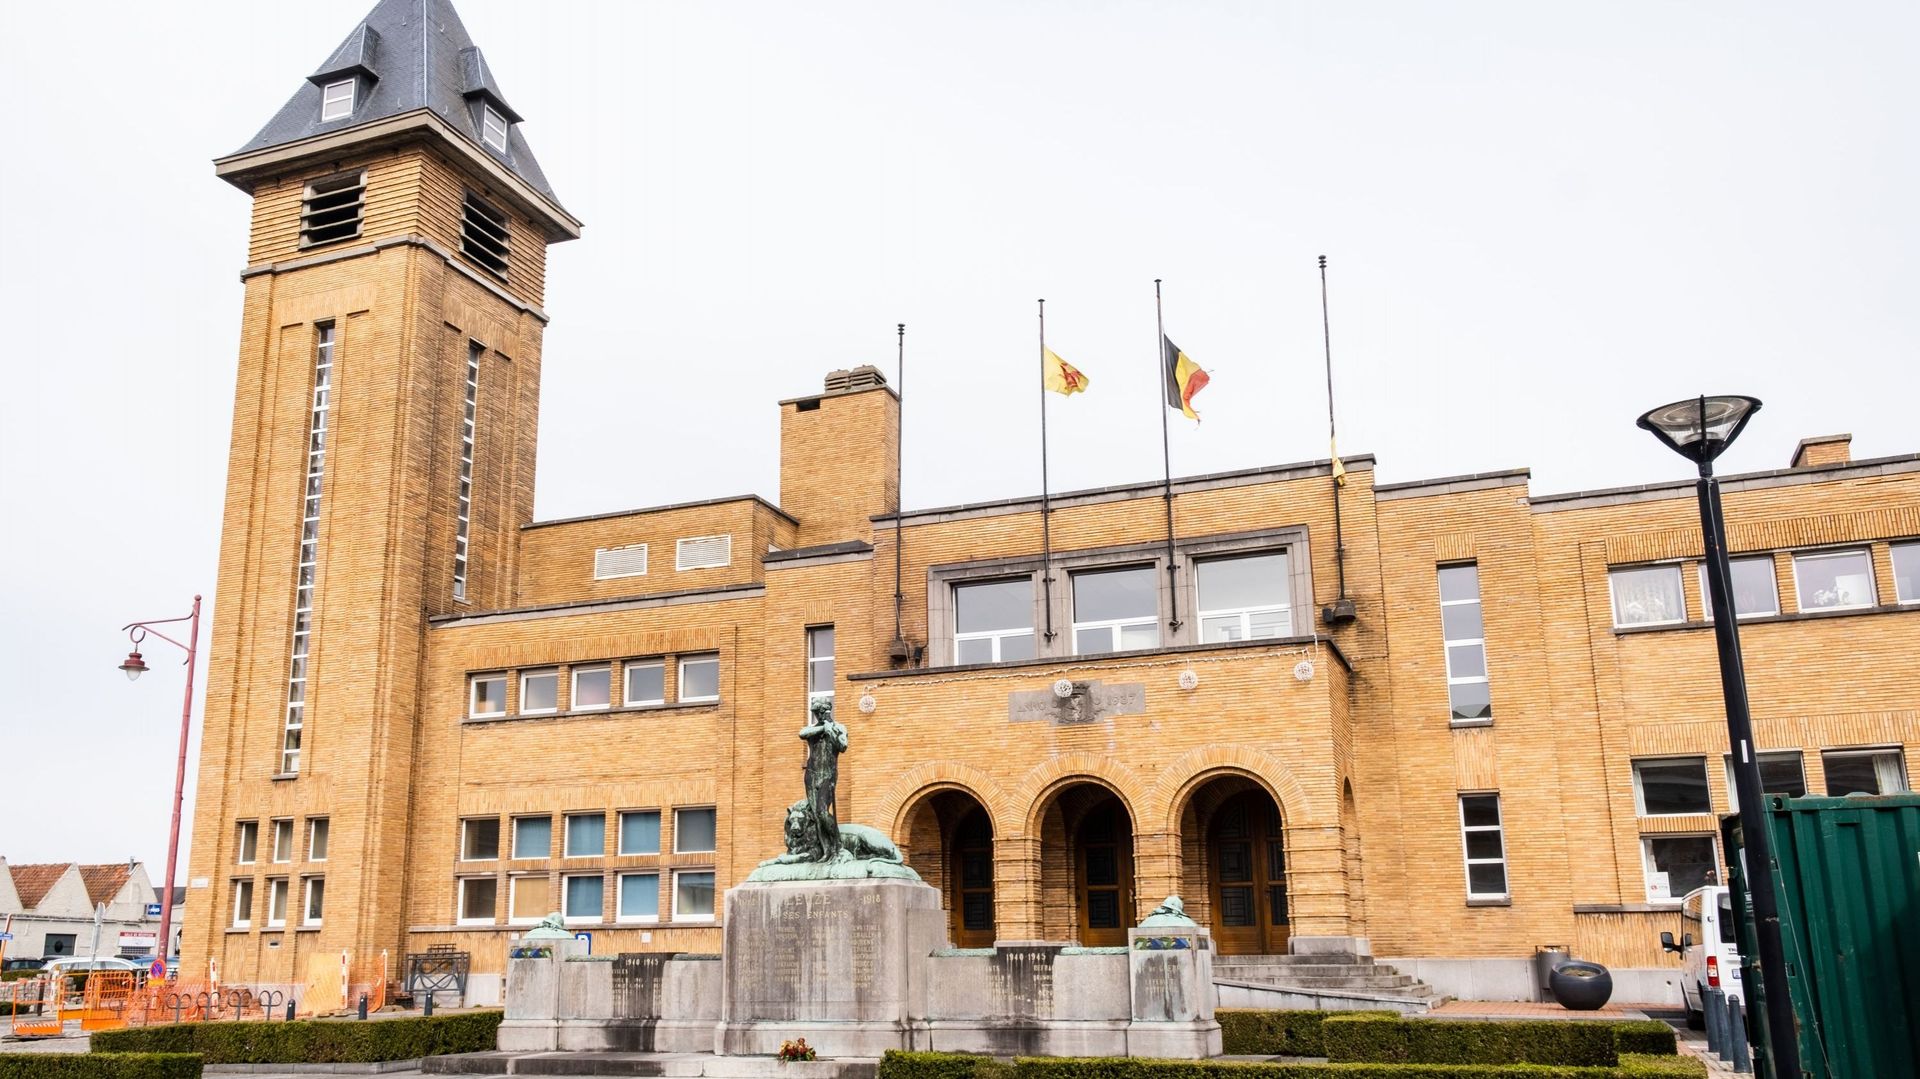 L’Hôtel de ville de Leuze-en-Hainaut